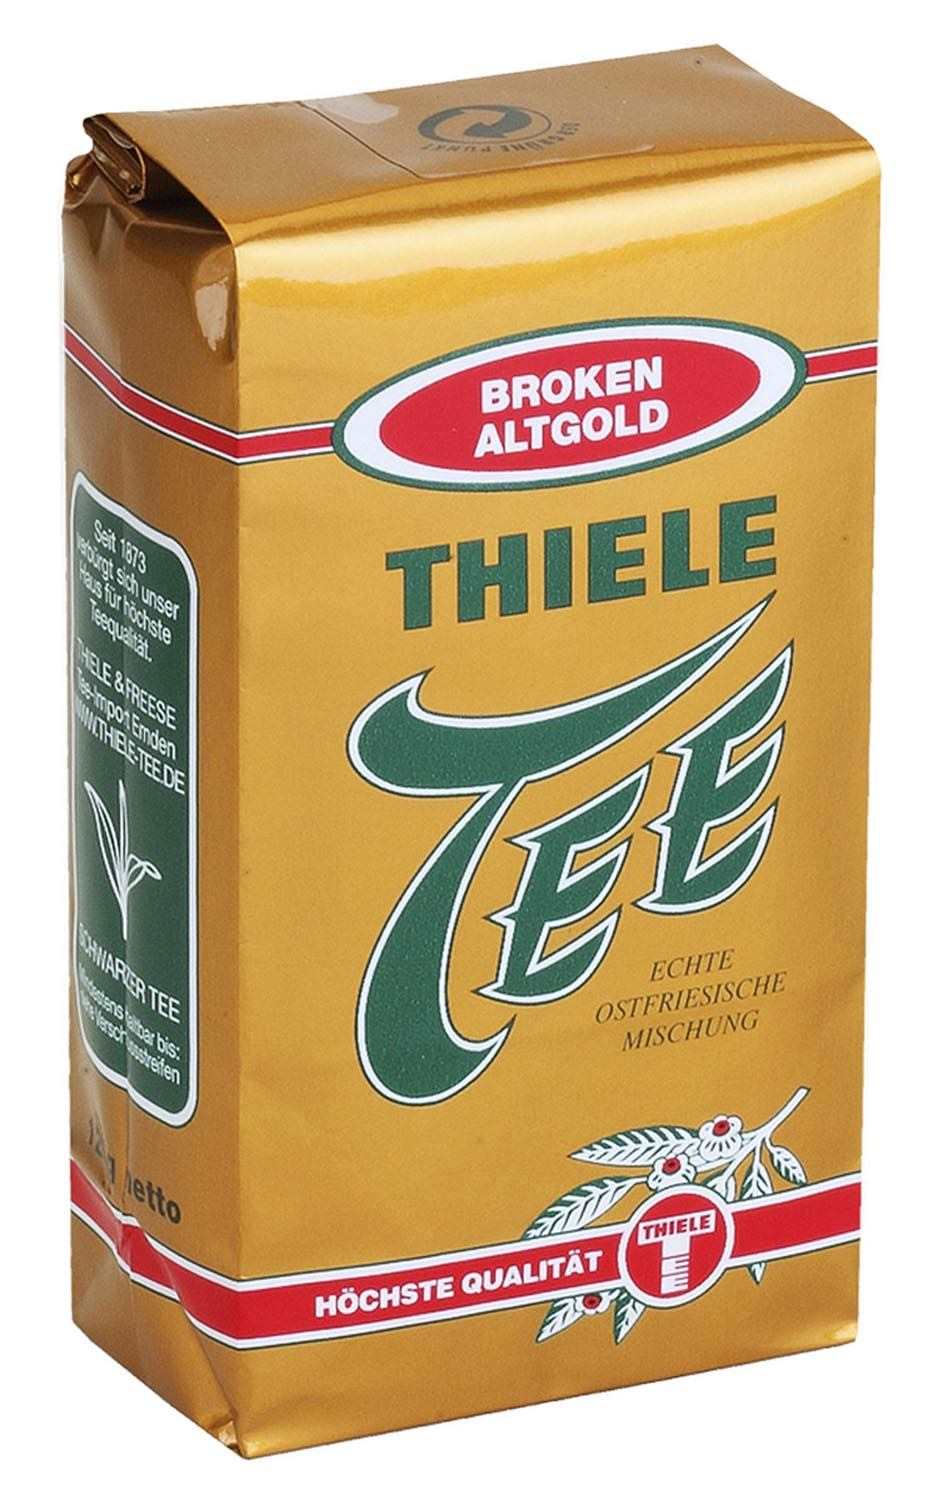 Thiele Broken Altgold